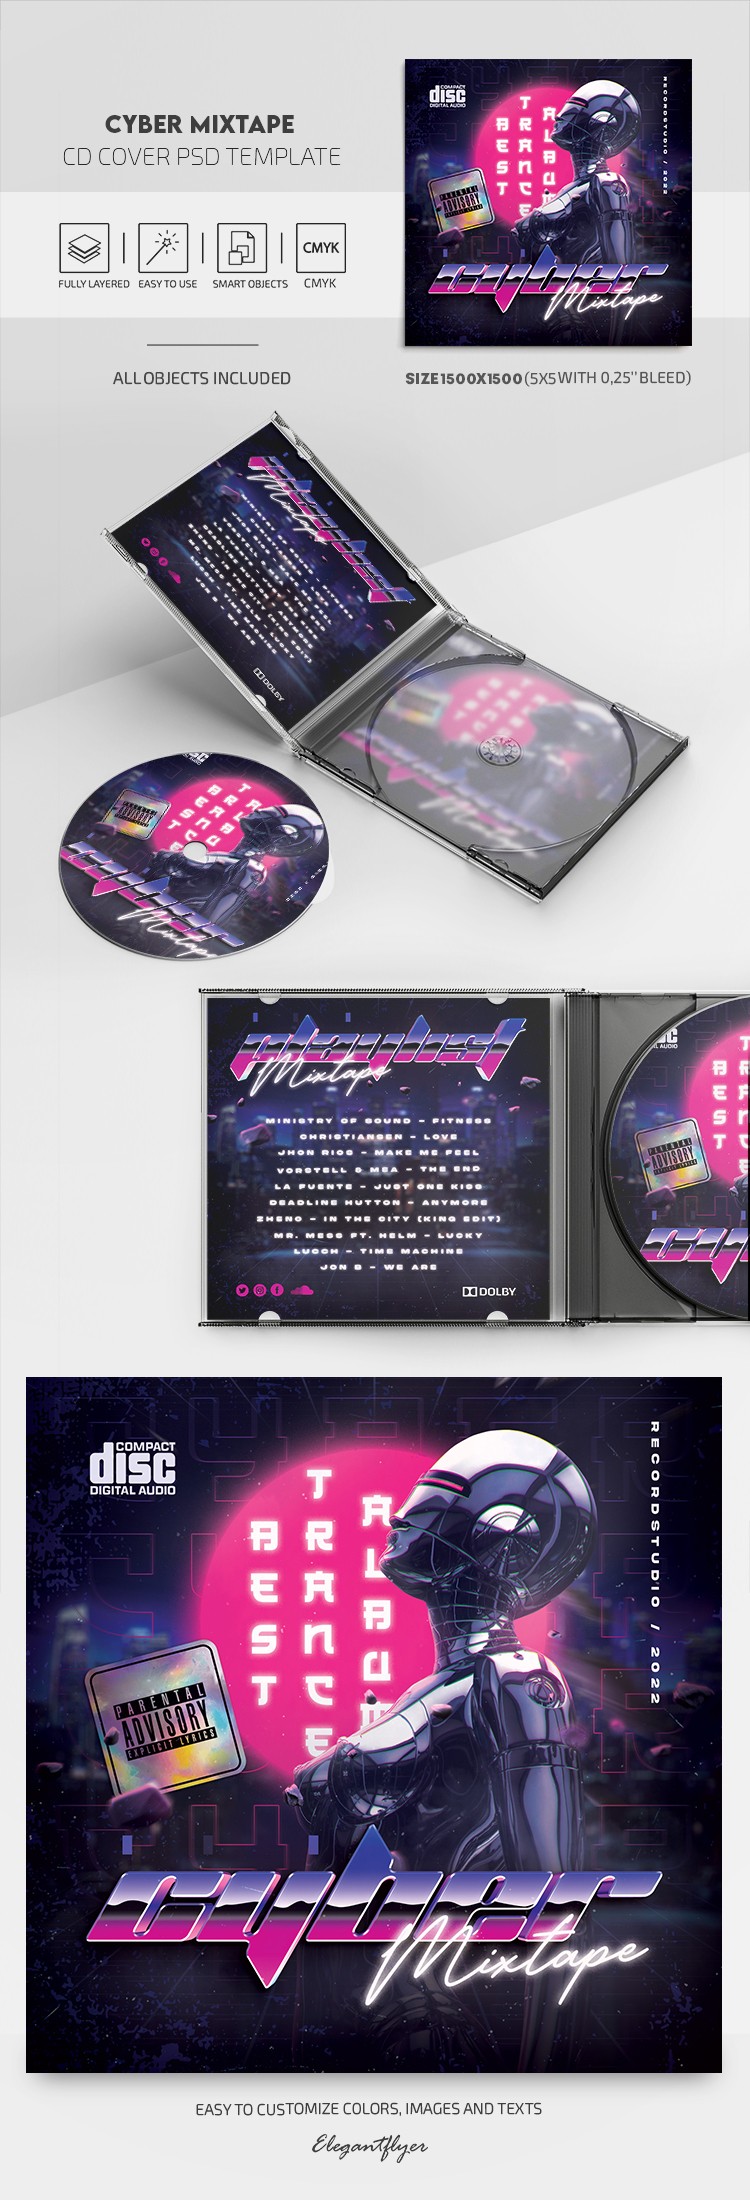 网络混音磁带CD封面 by ElegantFlyer